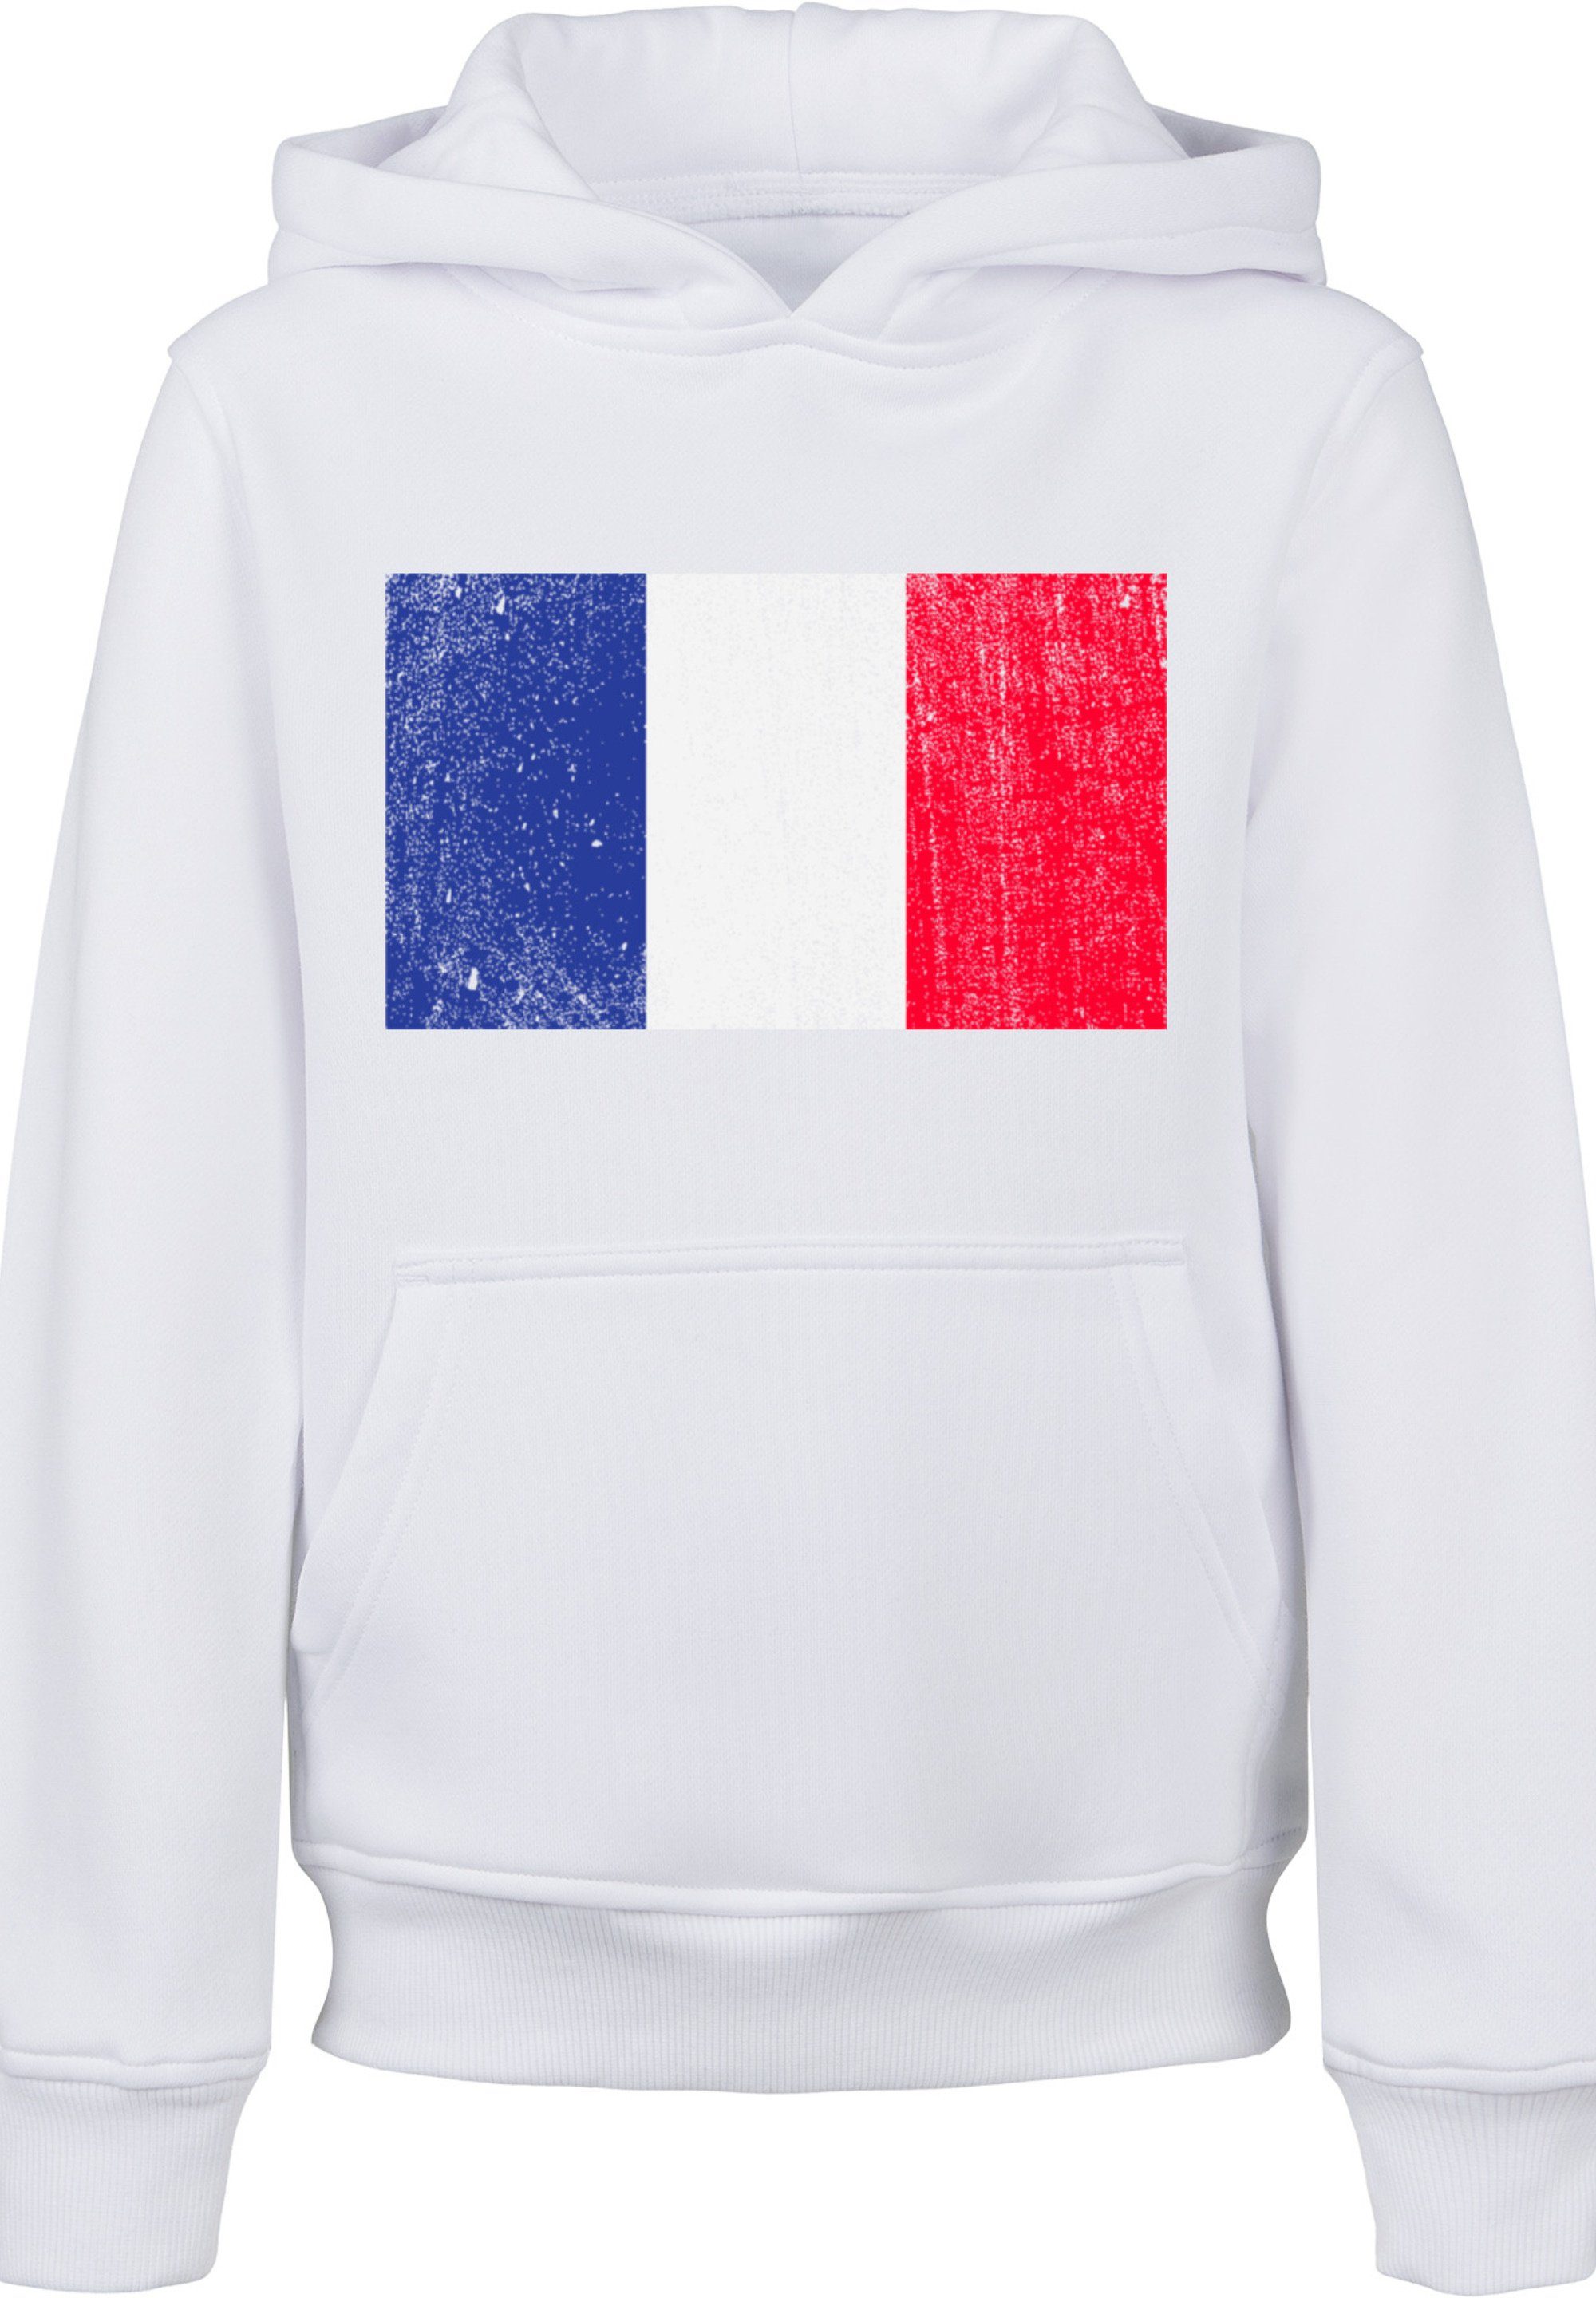 F4NT4STIC Kapuzenpullover France Frankreich Flagge Print distressed weiß